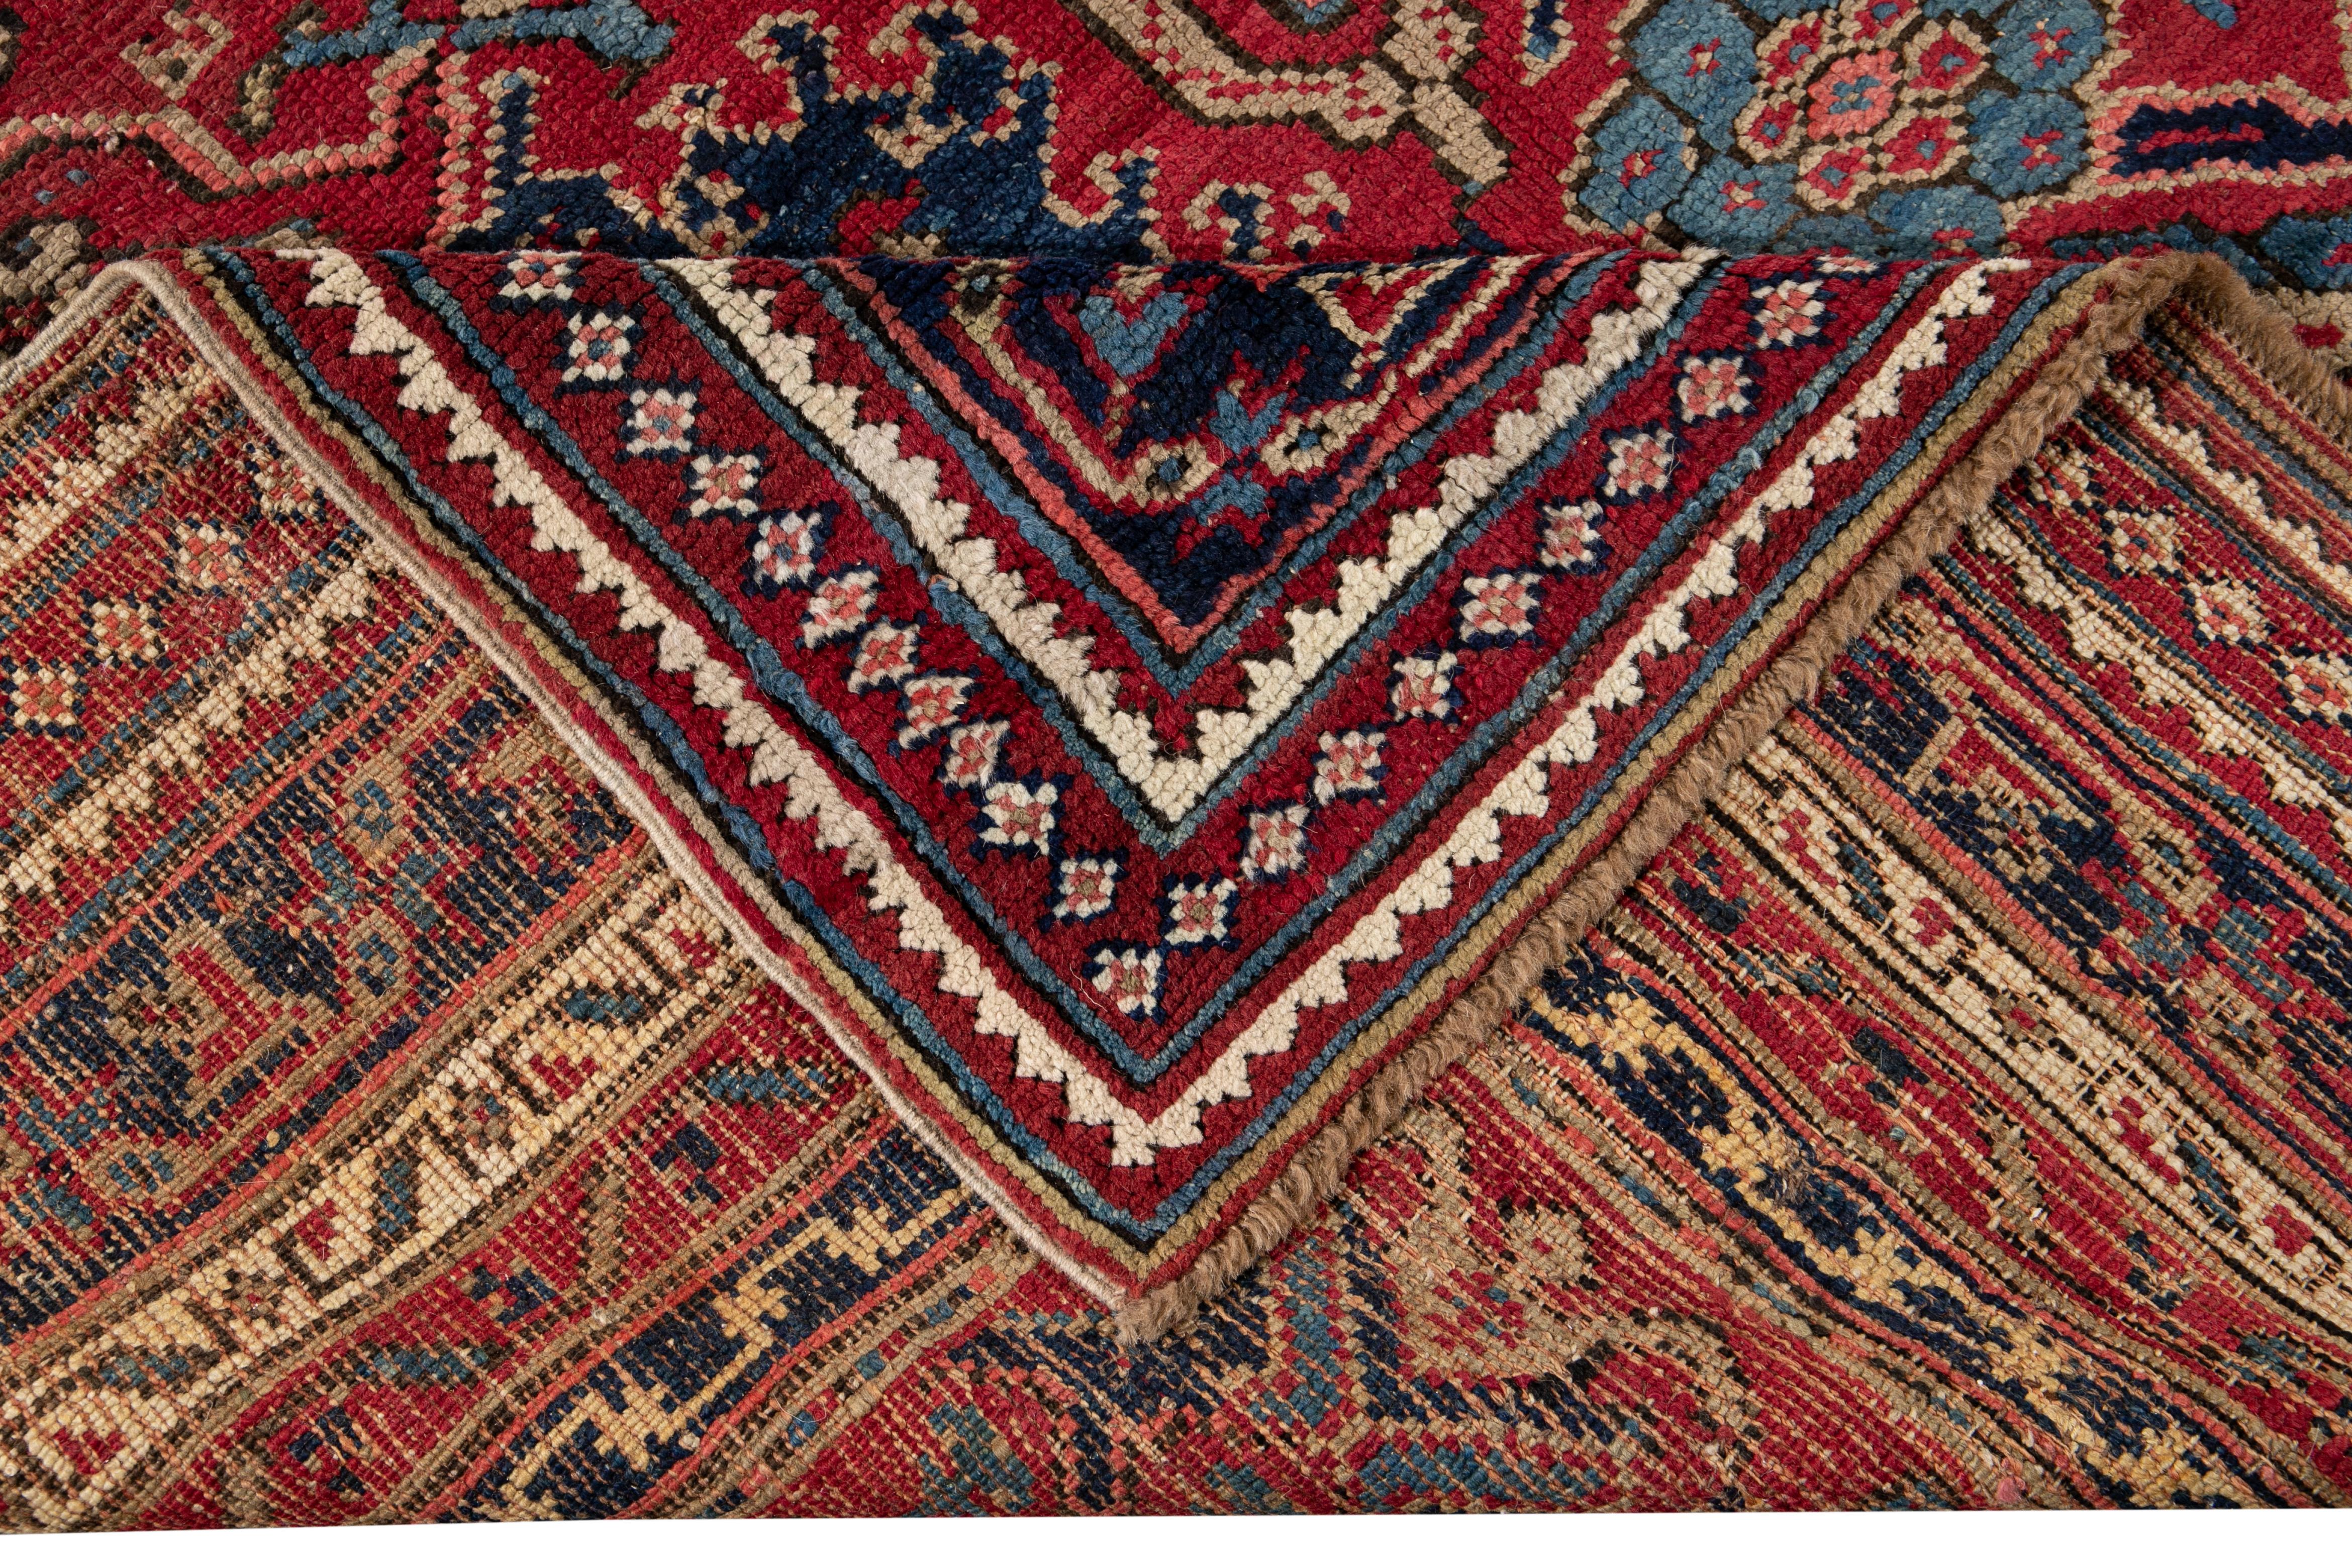 Magnifique tapis turc ancien en laine nouée à la main avec un champ rouge. Ce tapis a un cadre bleu conçu avec des accents multicolores dans un magnifique motif floral à grande échelle.

Ce tapis mesure : 11'6